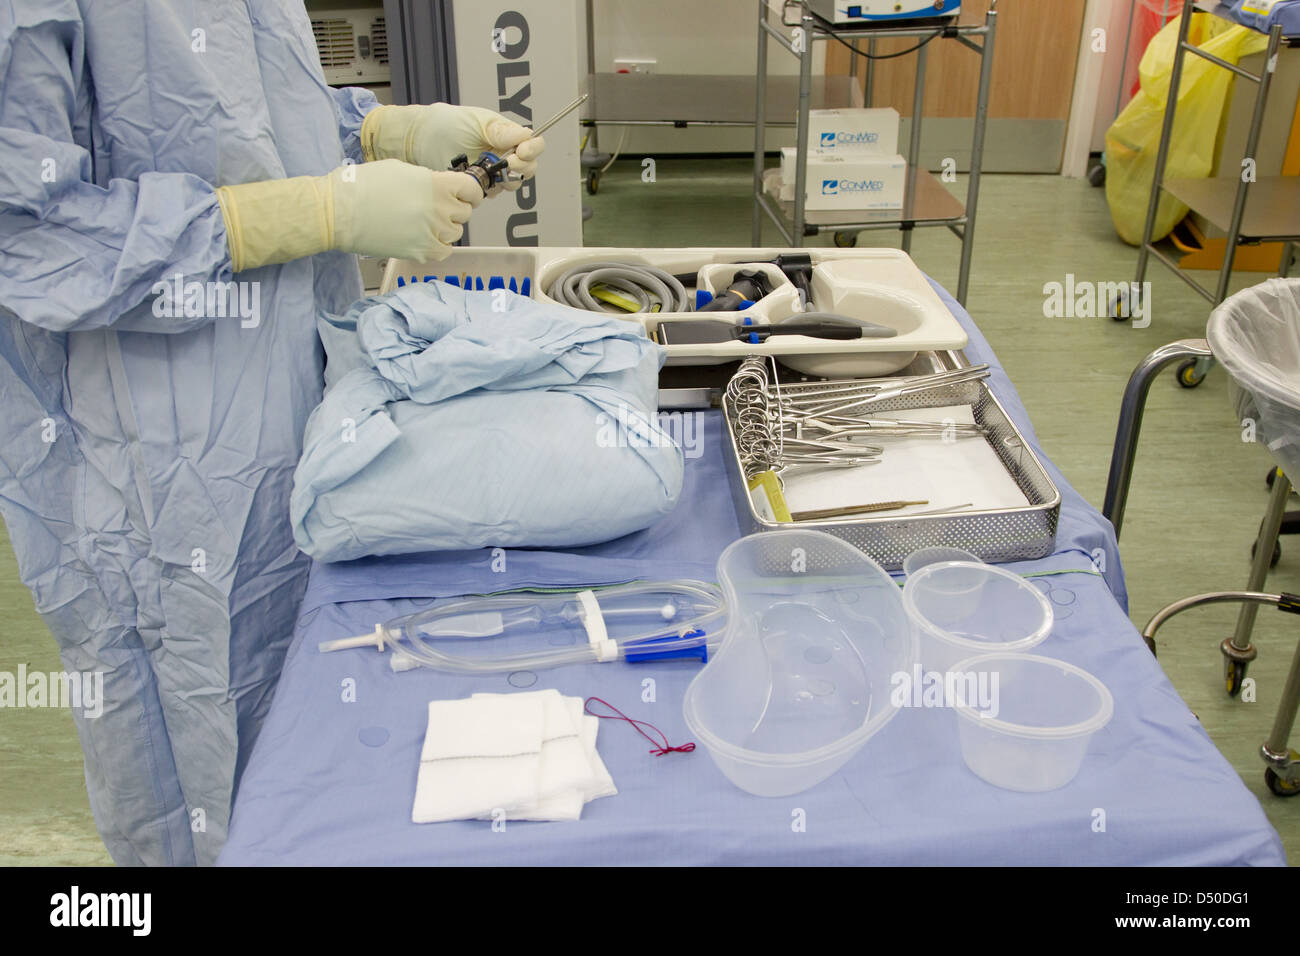 Chirurgie Krankenhaus Betrieb NHS Zulassung Arzt Chirurg Eintritt Stockfoto